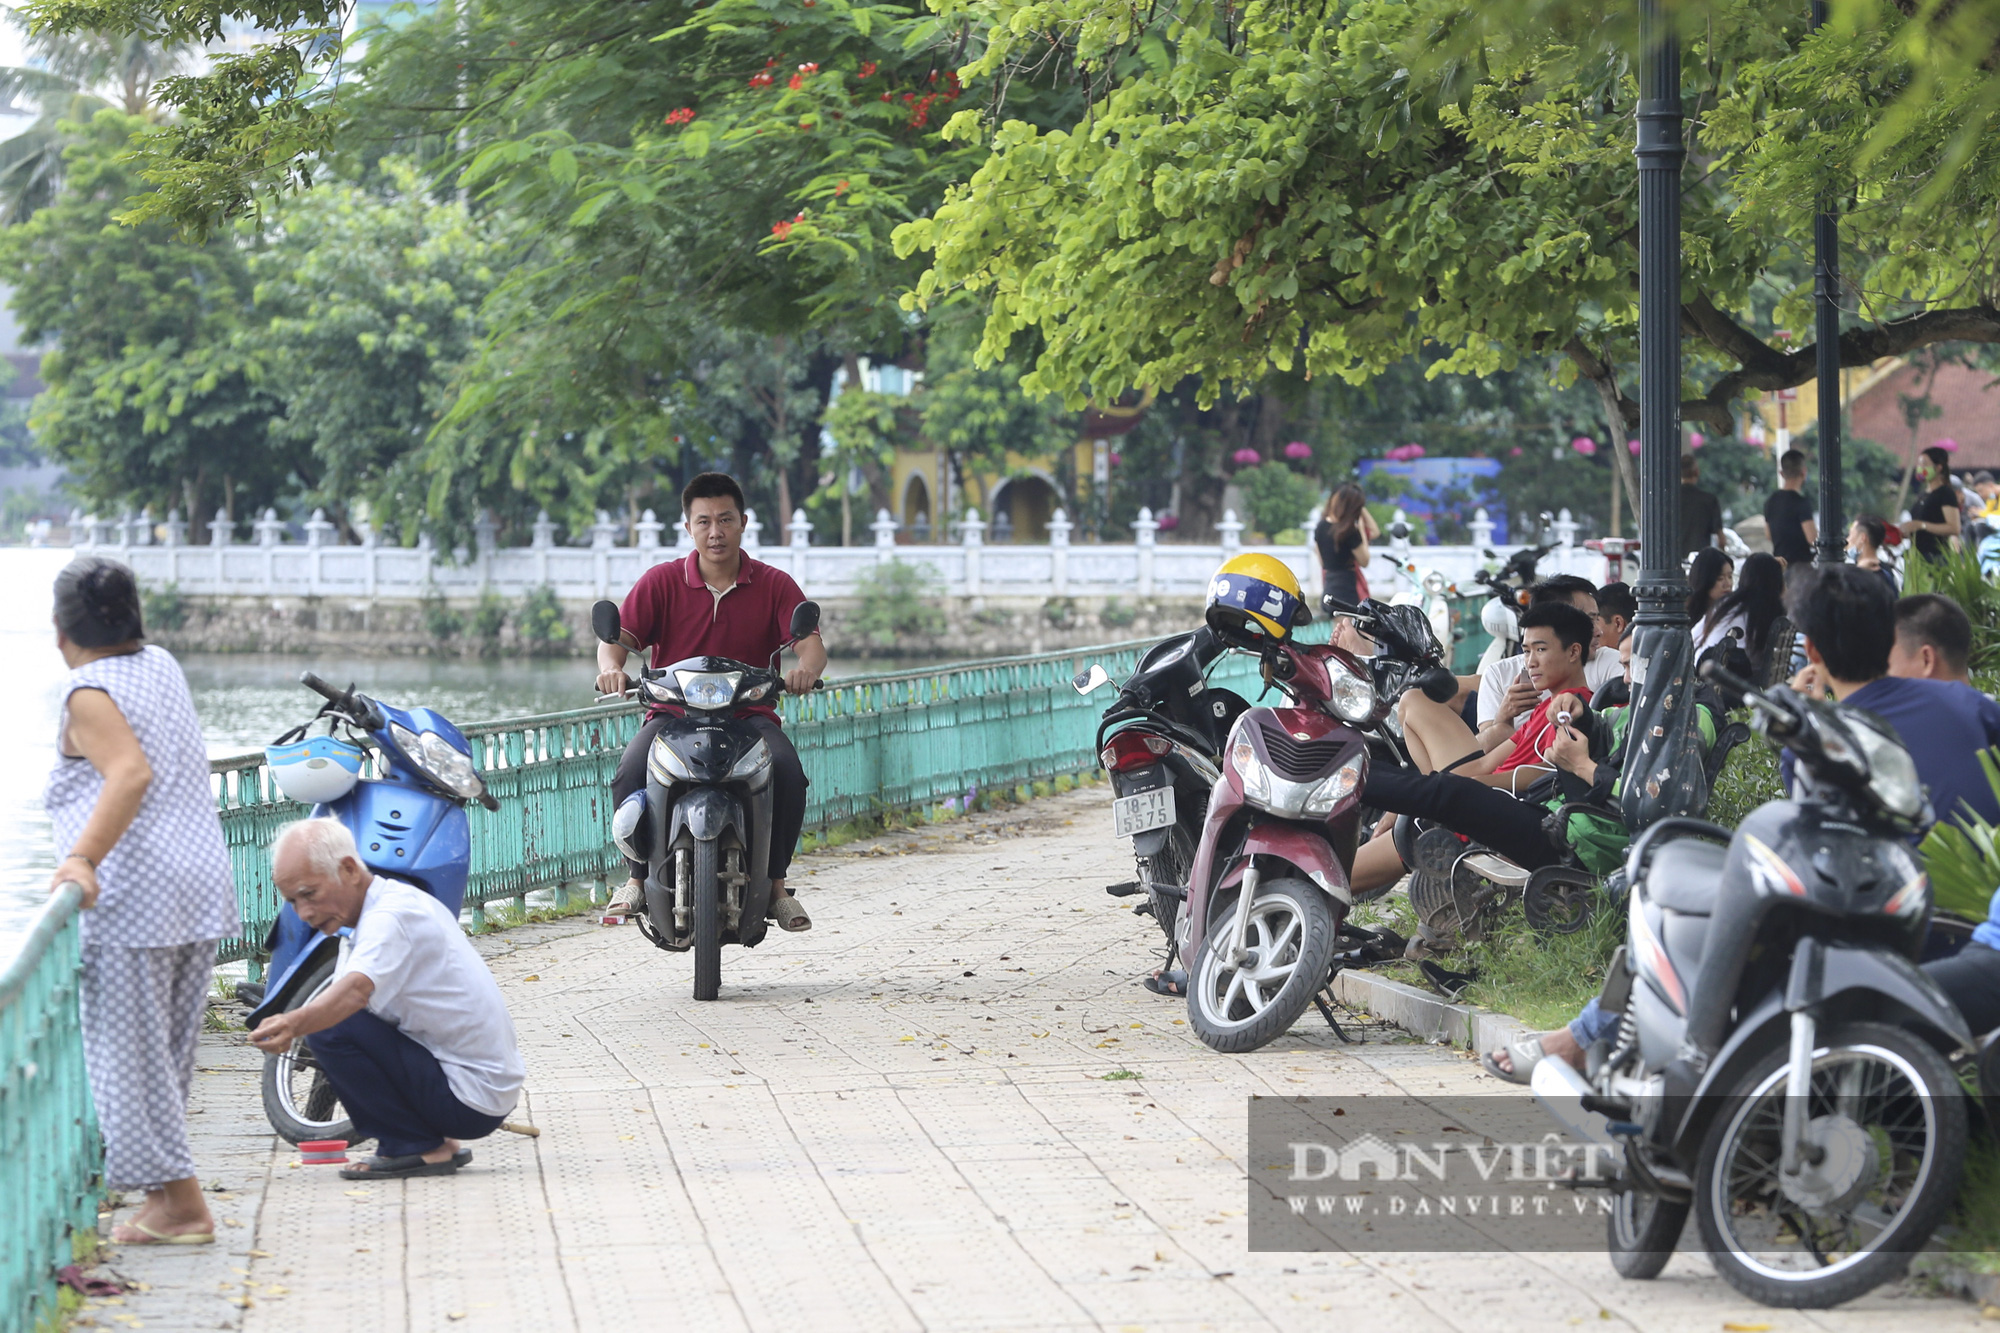 Hà Nội: Nhiều người dân vẫn không đeo khẩu trang tại nơi công cộng - Ảnh 3.